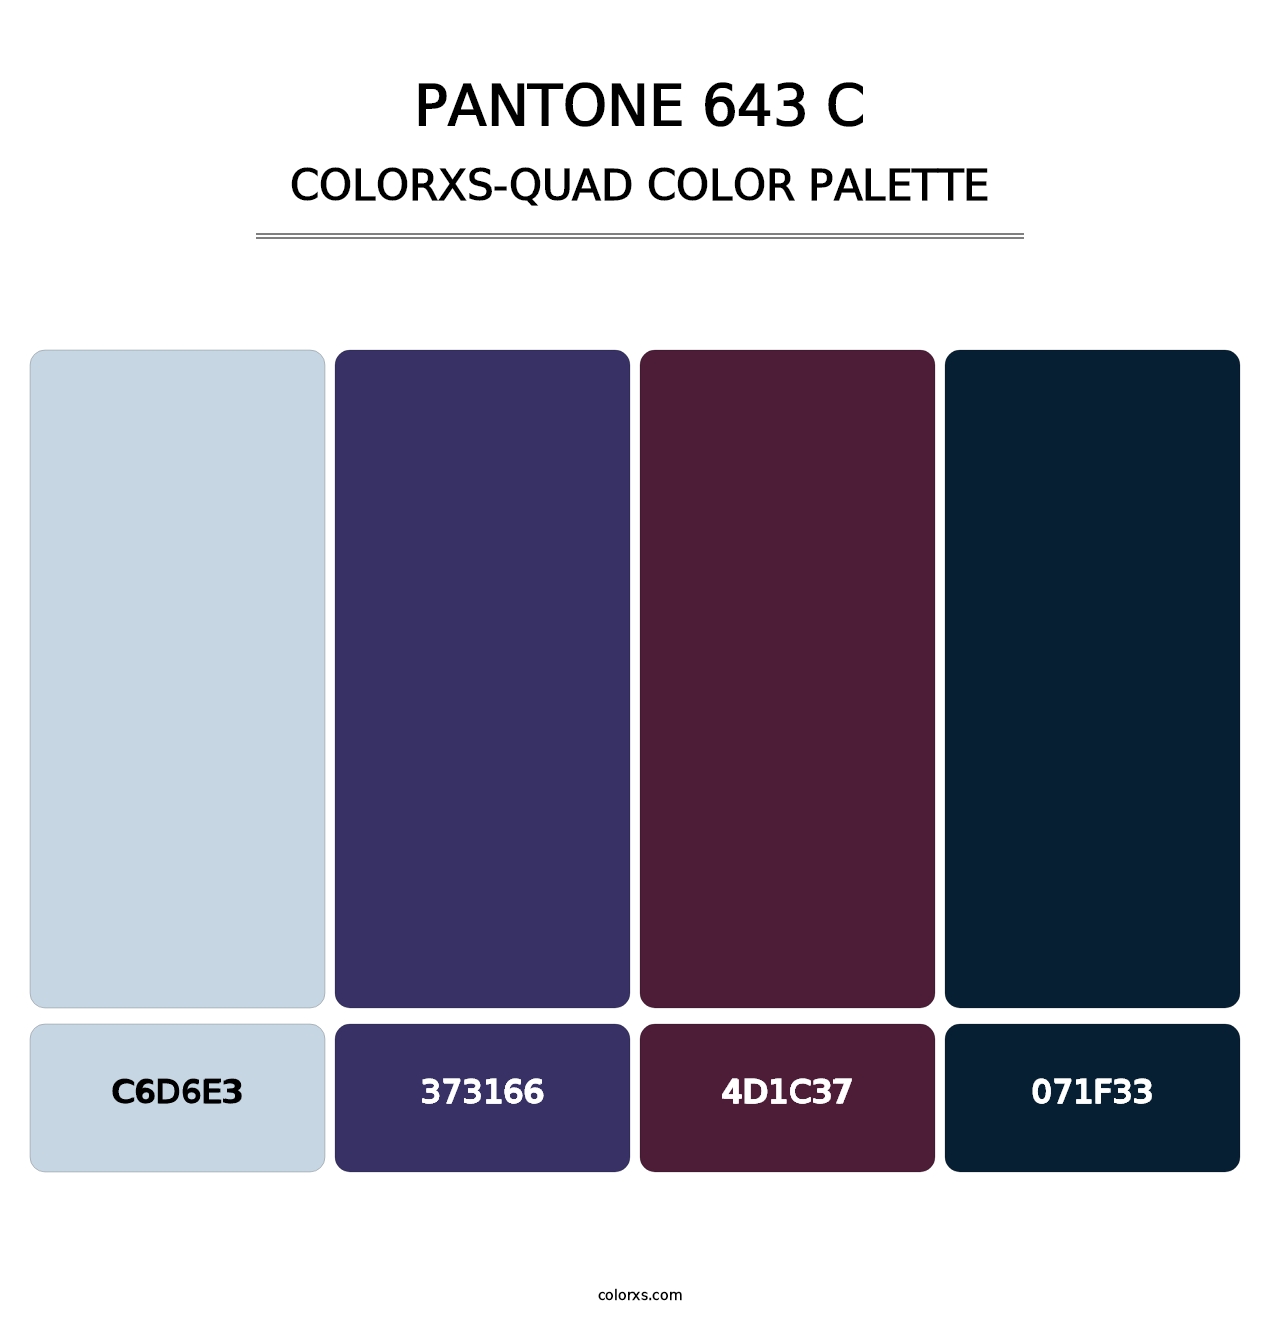 PANTONE 643 C - Colorxs Quad Palette